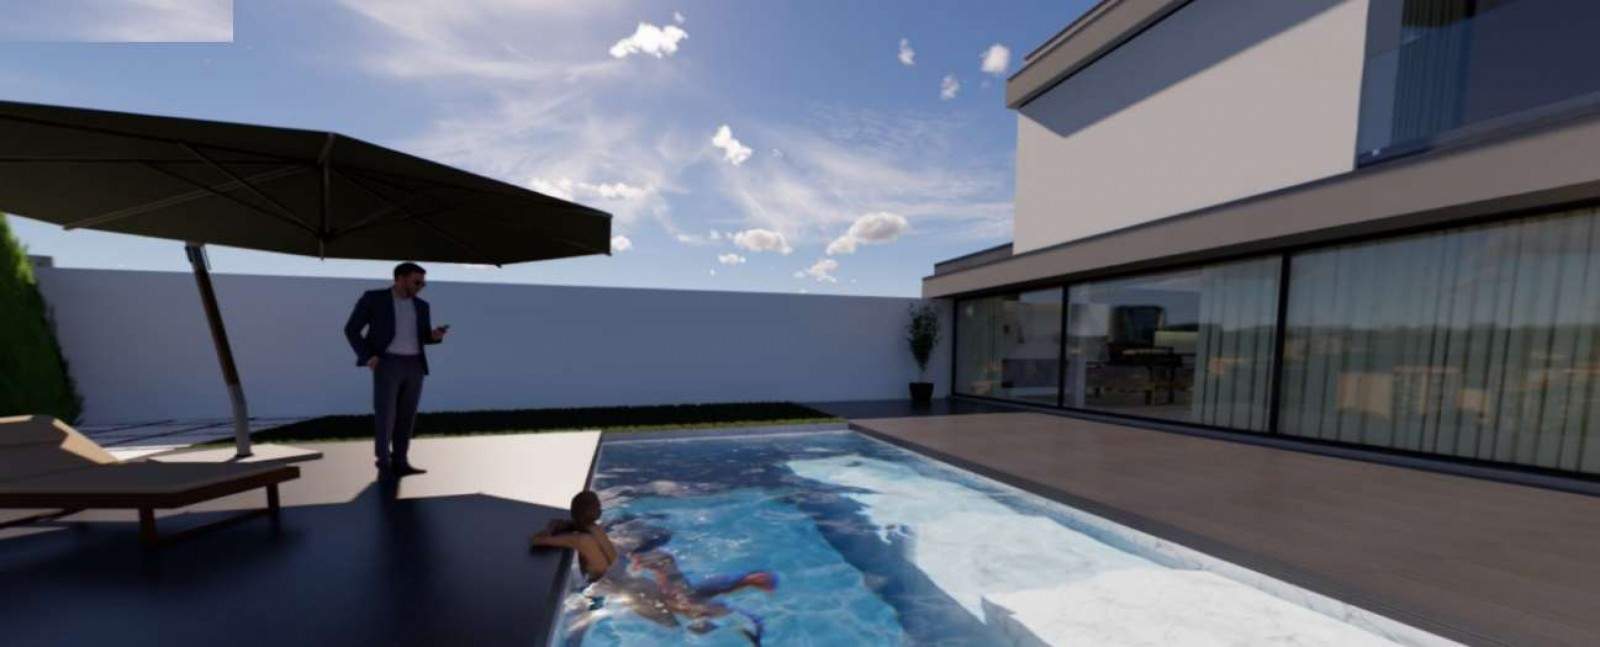 Venta: Chalet independiente de una sola planta en construcción, con jardín y piscina, V. N. Gaia, Portugal_200764